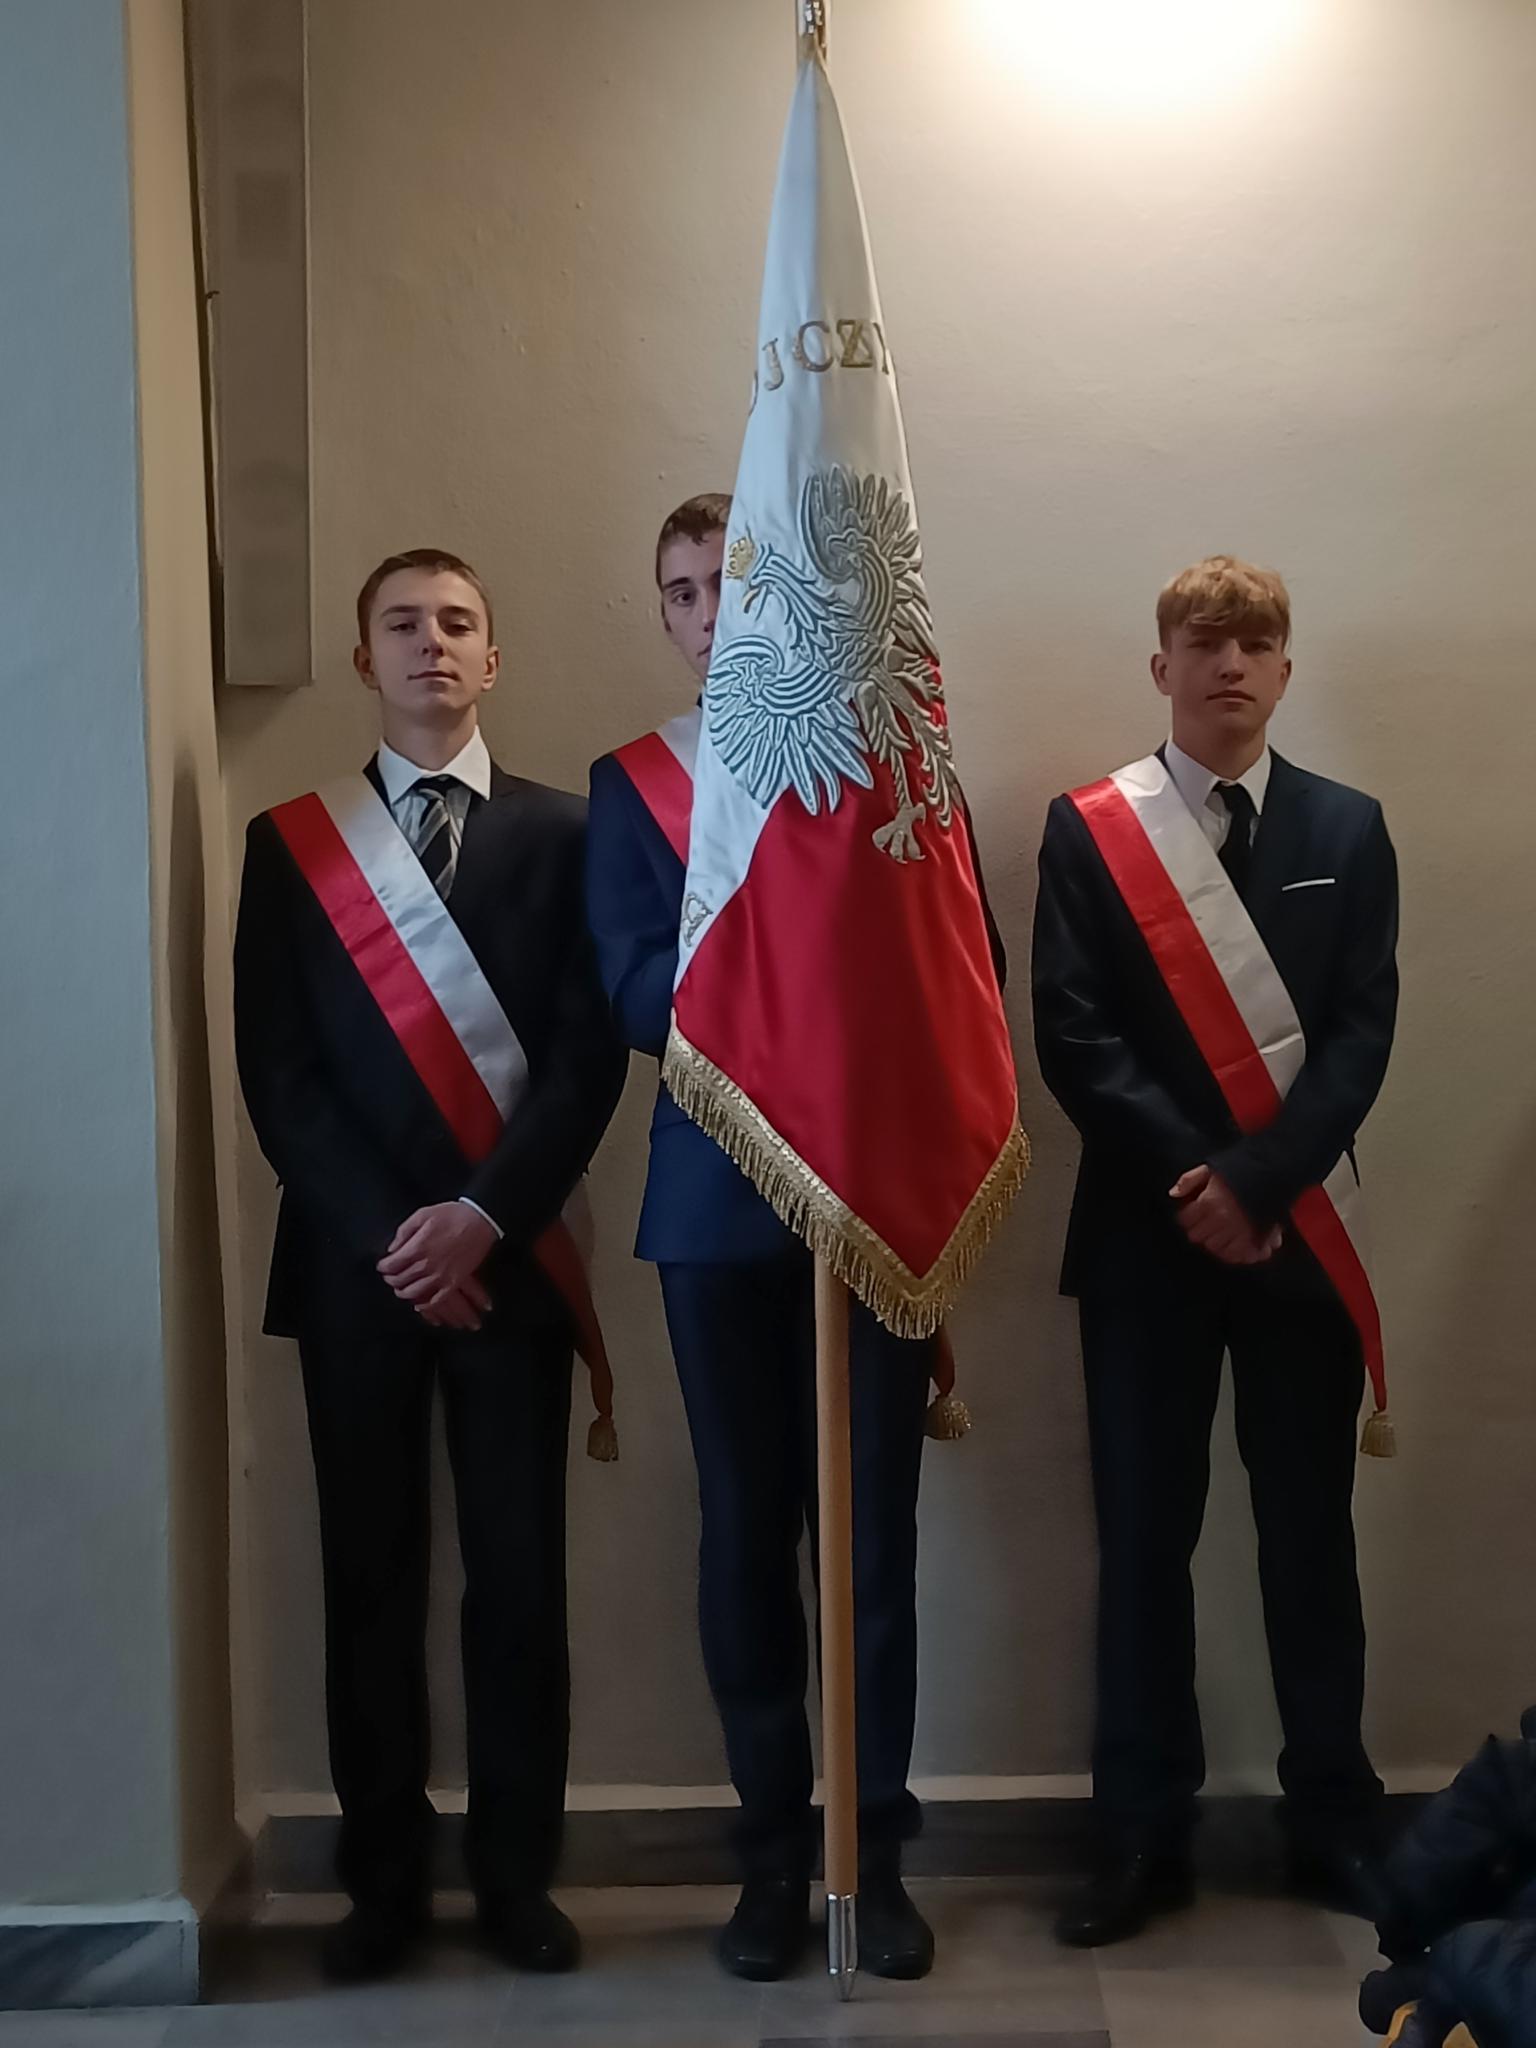 Narodowe Święto Niepodległości | Trzech chłopców w garniturach i biało-czerwonych szarfach stoi trzymając sztandar pod ścianą podczas mszy w kościele..jpg